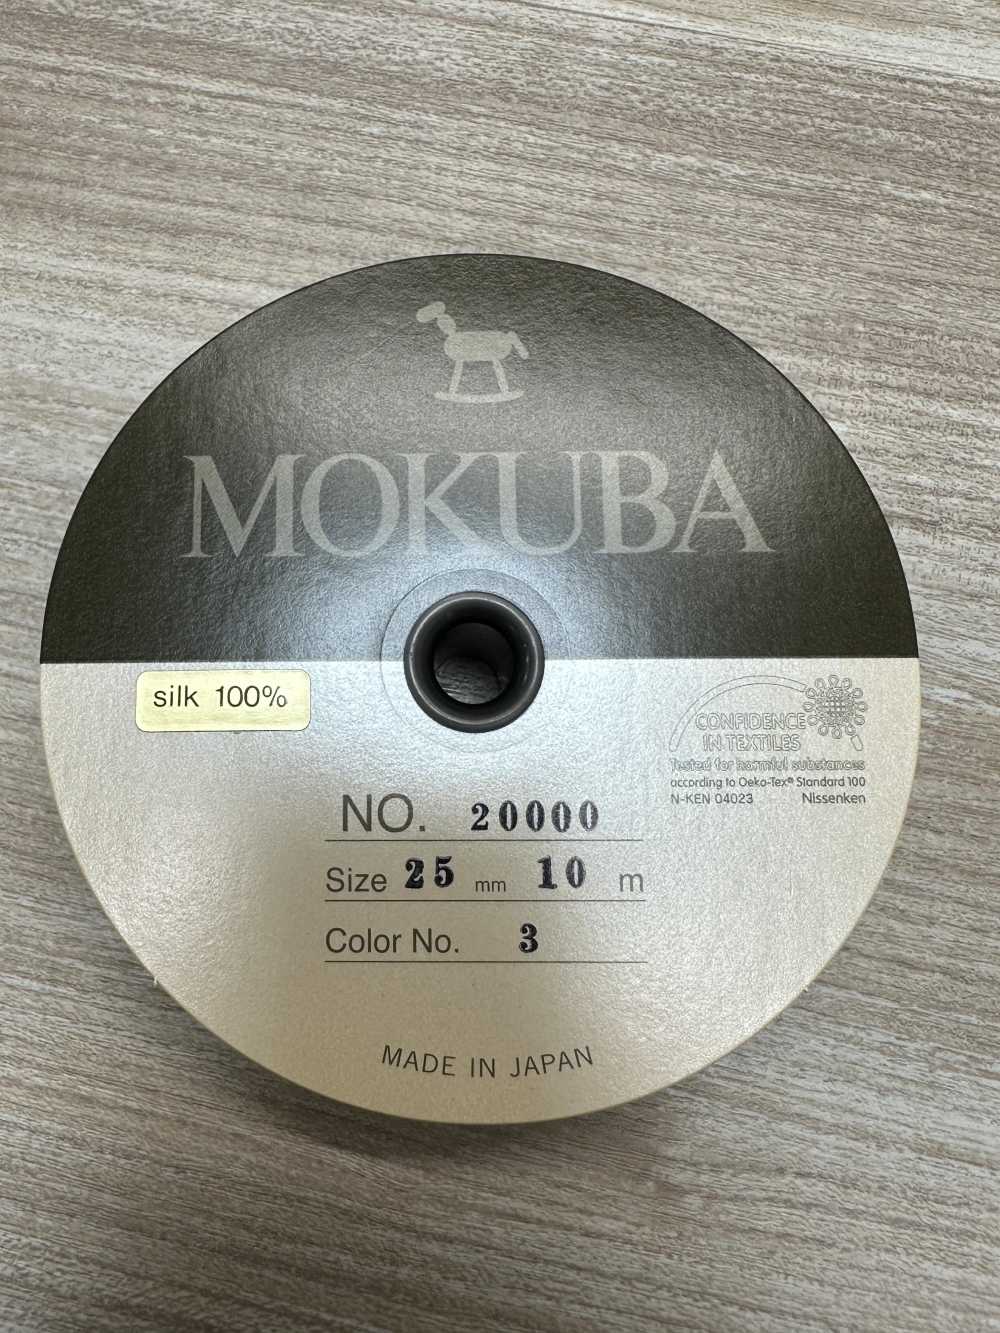 20000 Nastro In Gros Grain Di Seta MOKUBA [outlet][Cavo A Nastro] Mokuba